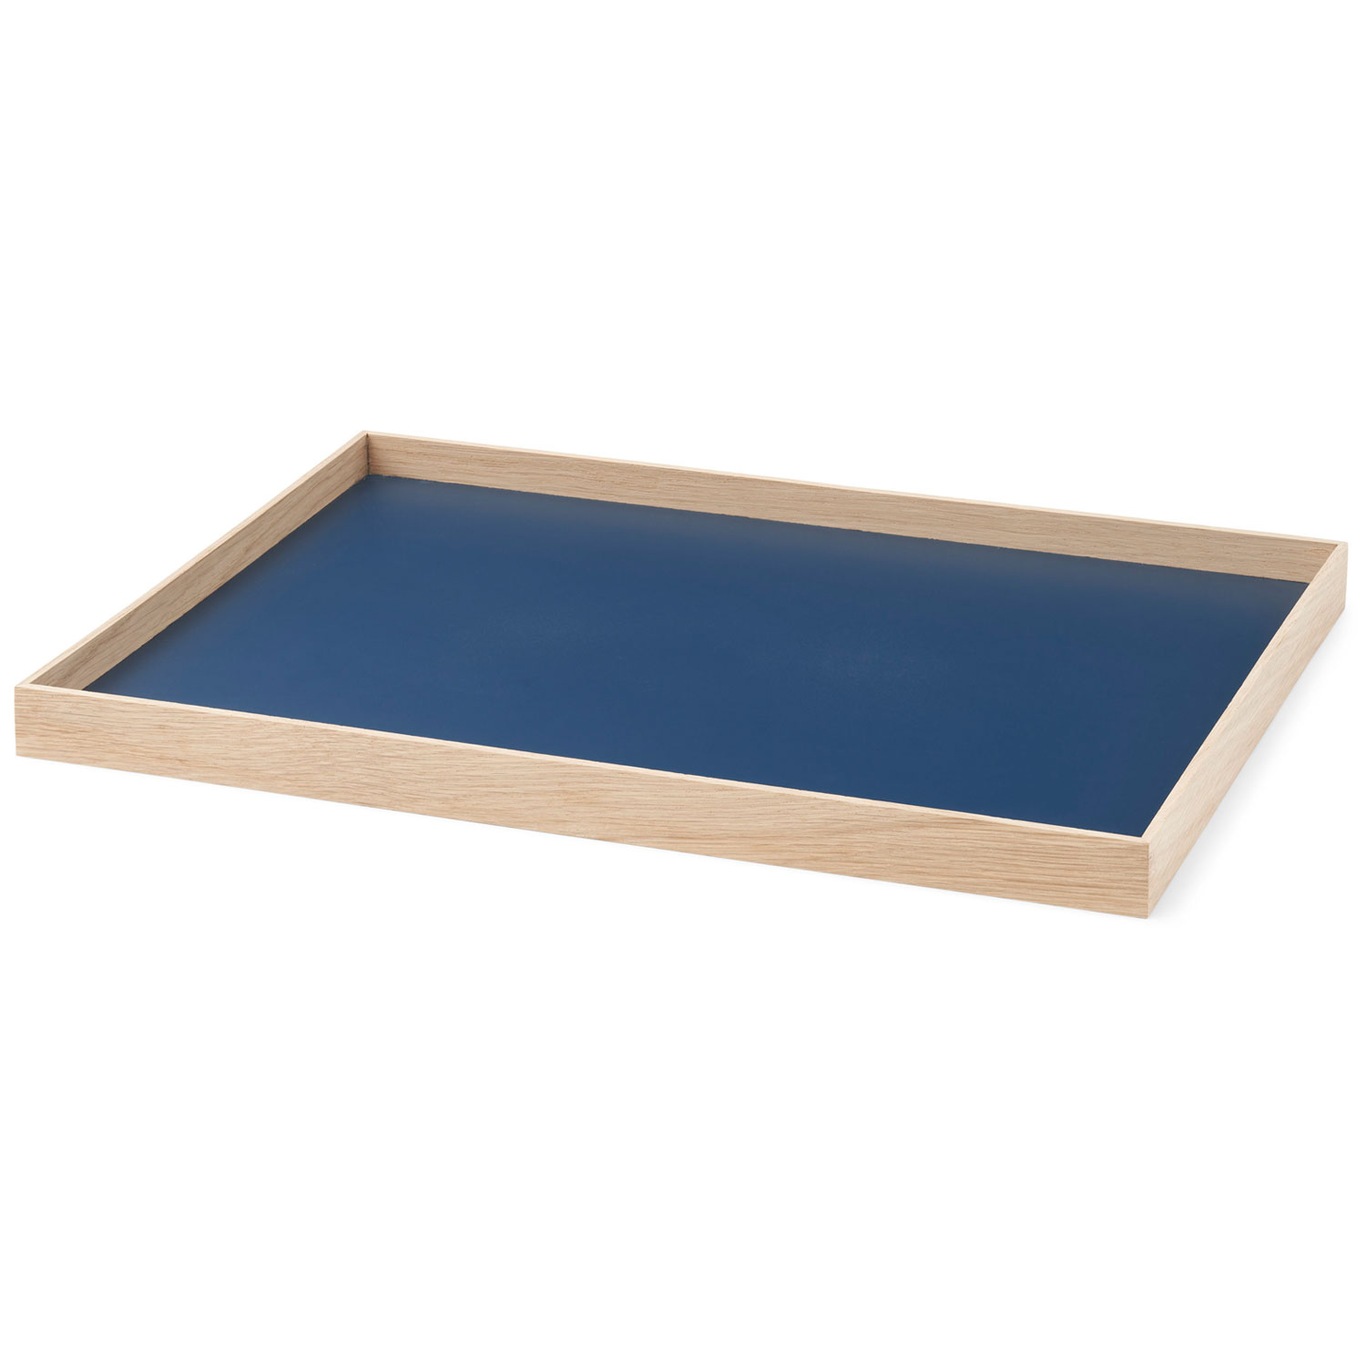 Frame Dienblad Eiken / Blauw Medium 34 x 23.2 cm